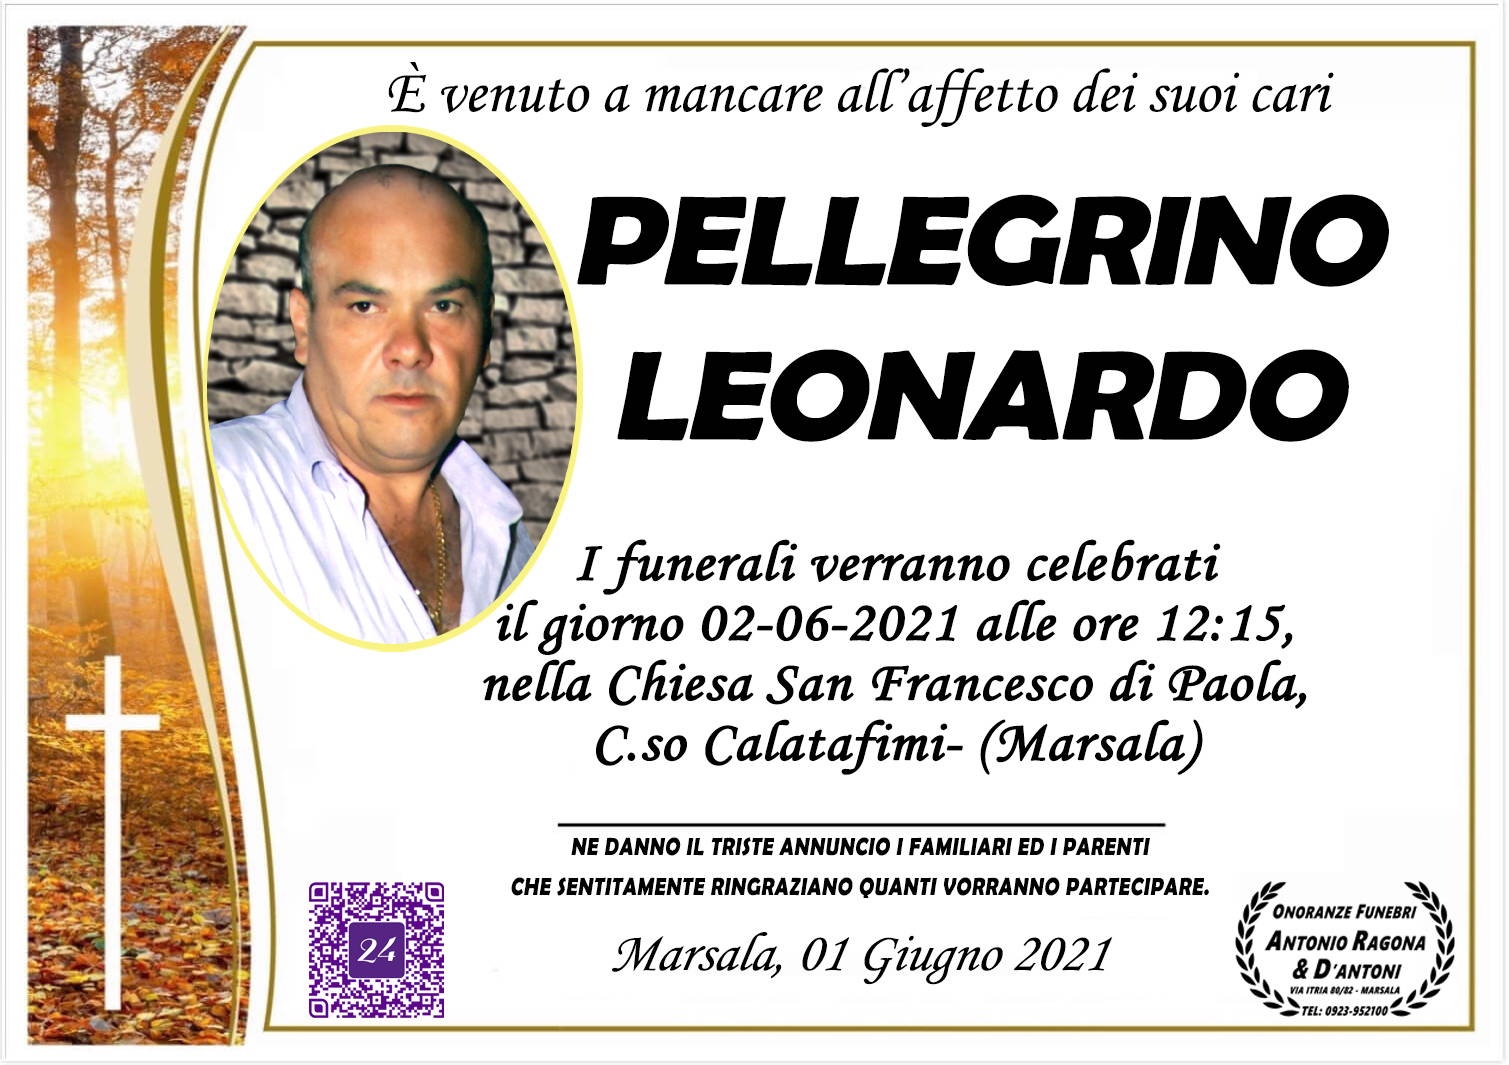 Leonardo Pellegrino